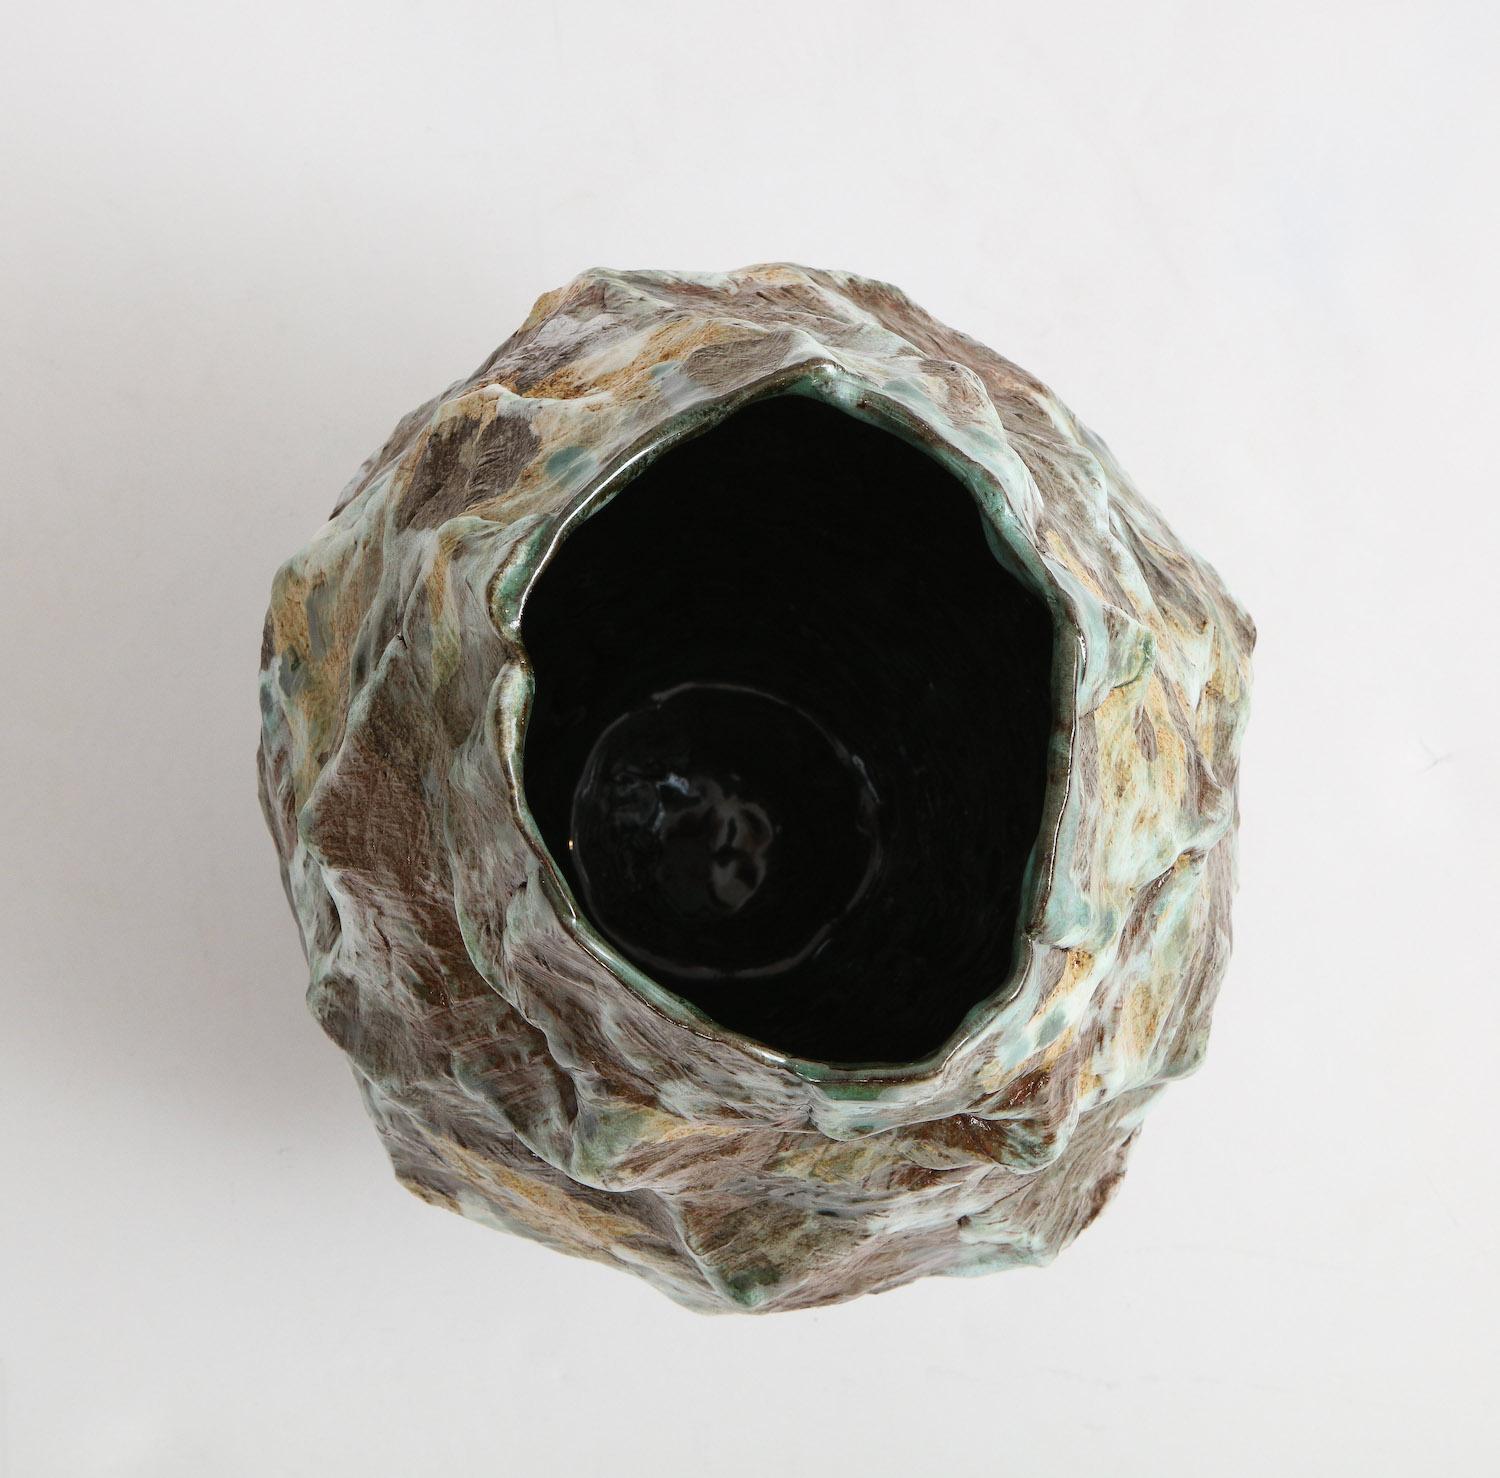 Contemporary Large Sculptural Vase #4 by Dena Zemsky For Sale